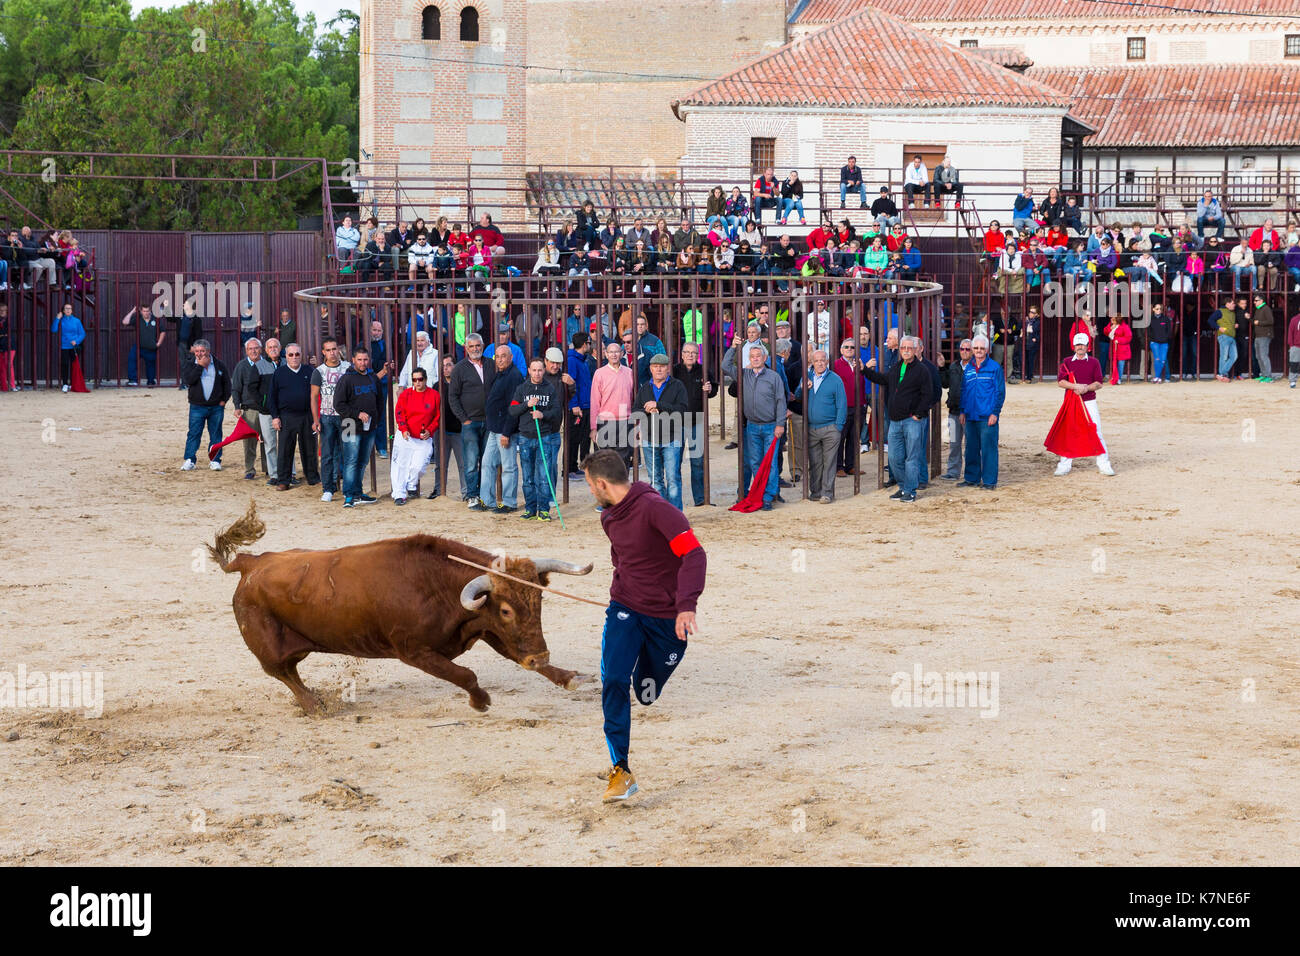 La population locale au cours de bull difficile festival traditionnel à madrigal de los altas torres dans la province d'Avila, Espagne Banque D'Images